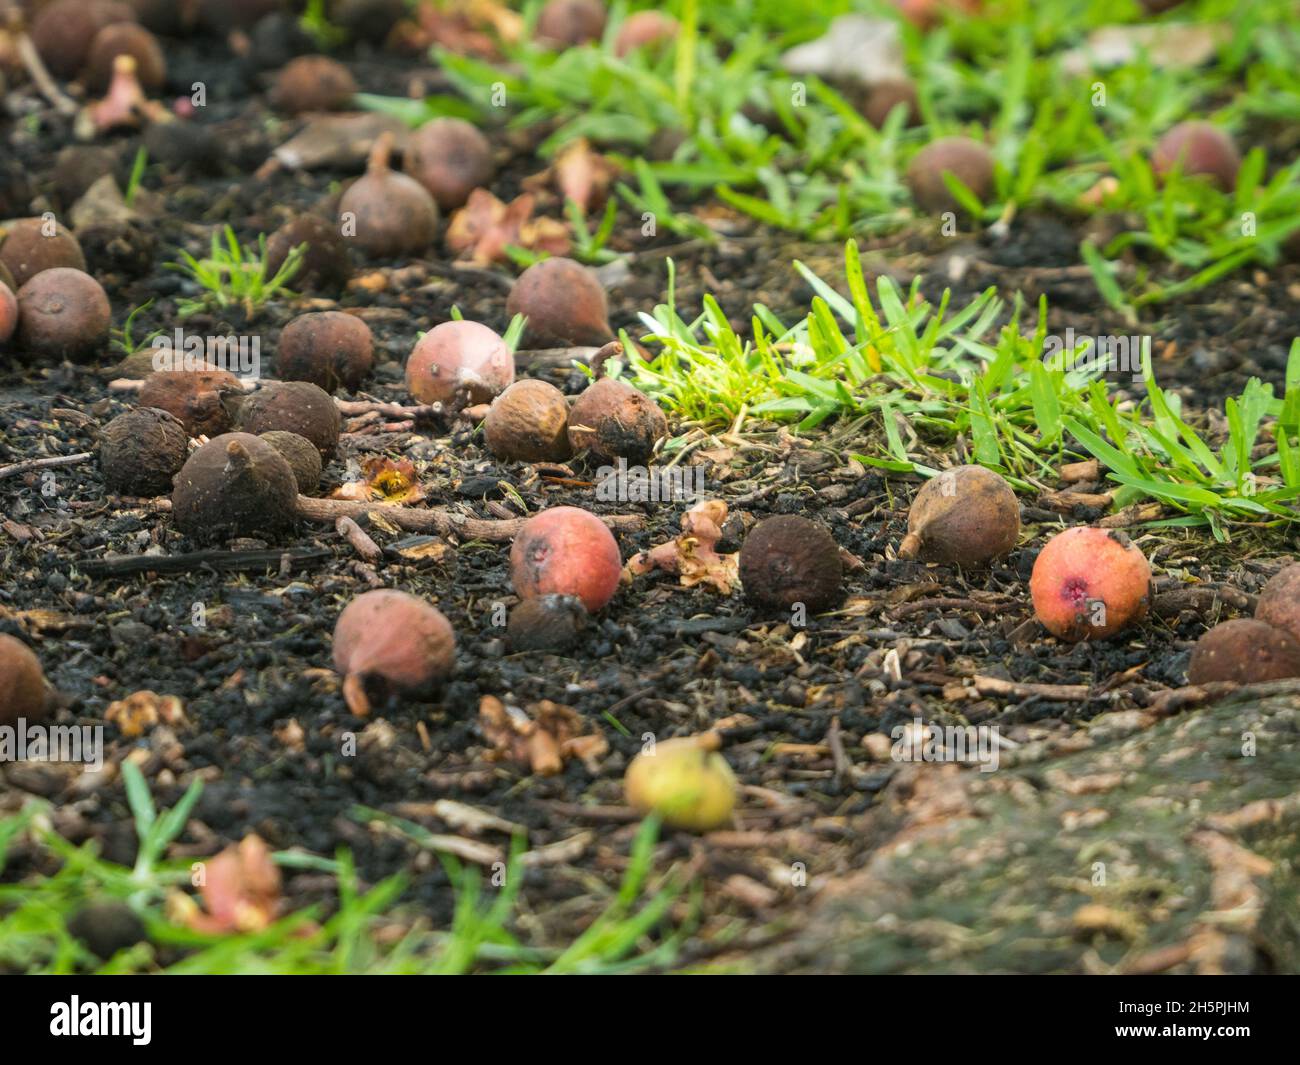 Die essbare rosafarbene Frucht der großblättrigen Bayan- oder  Ficus-Jungfrauen, braun, überreif und verrottet auf dem Boden unter Schmutz  und grünem Gras Stockfotografie - Alamy